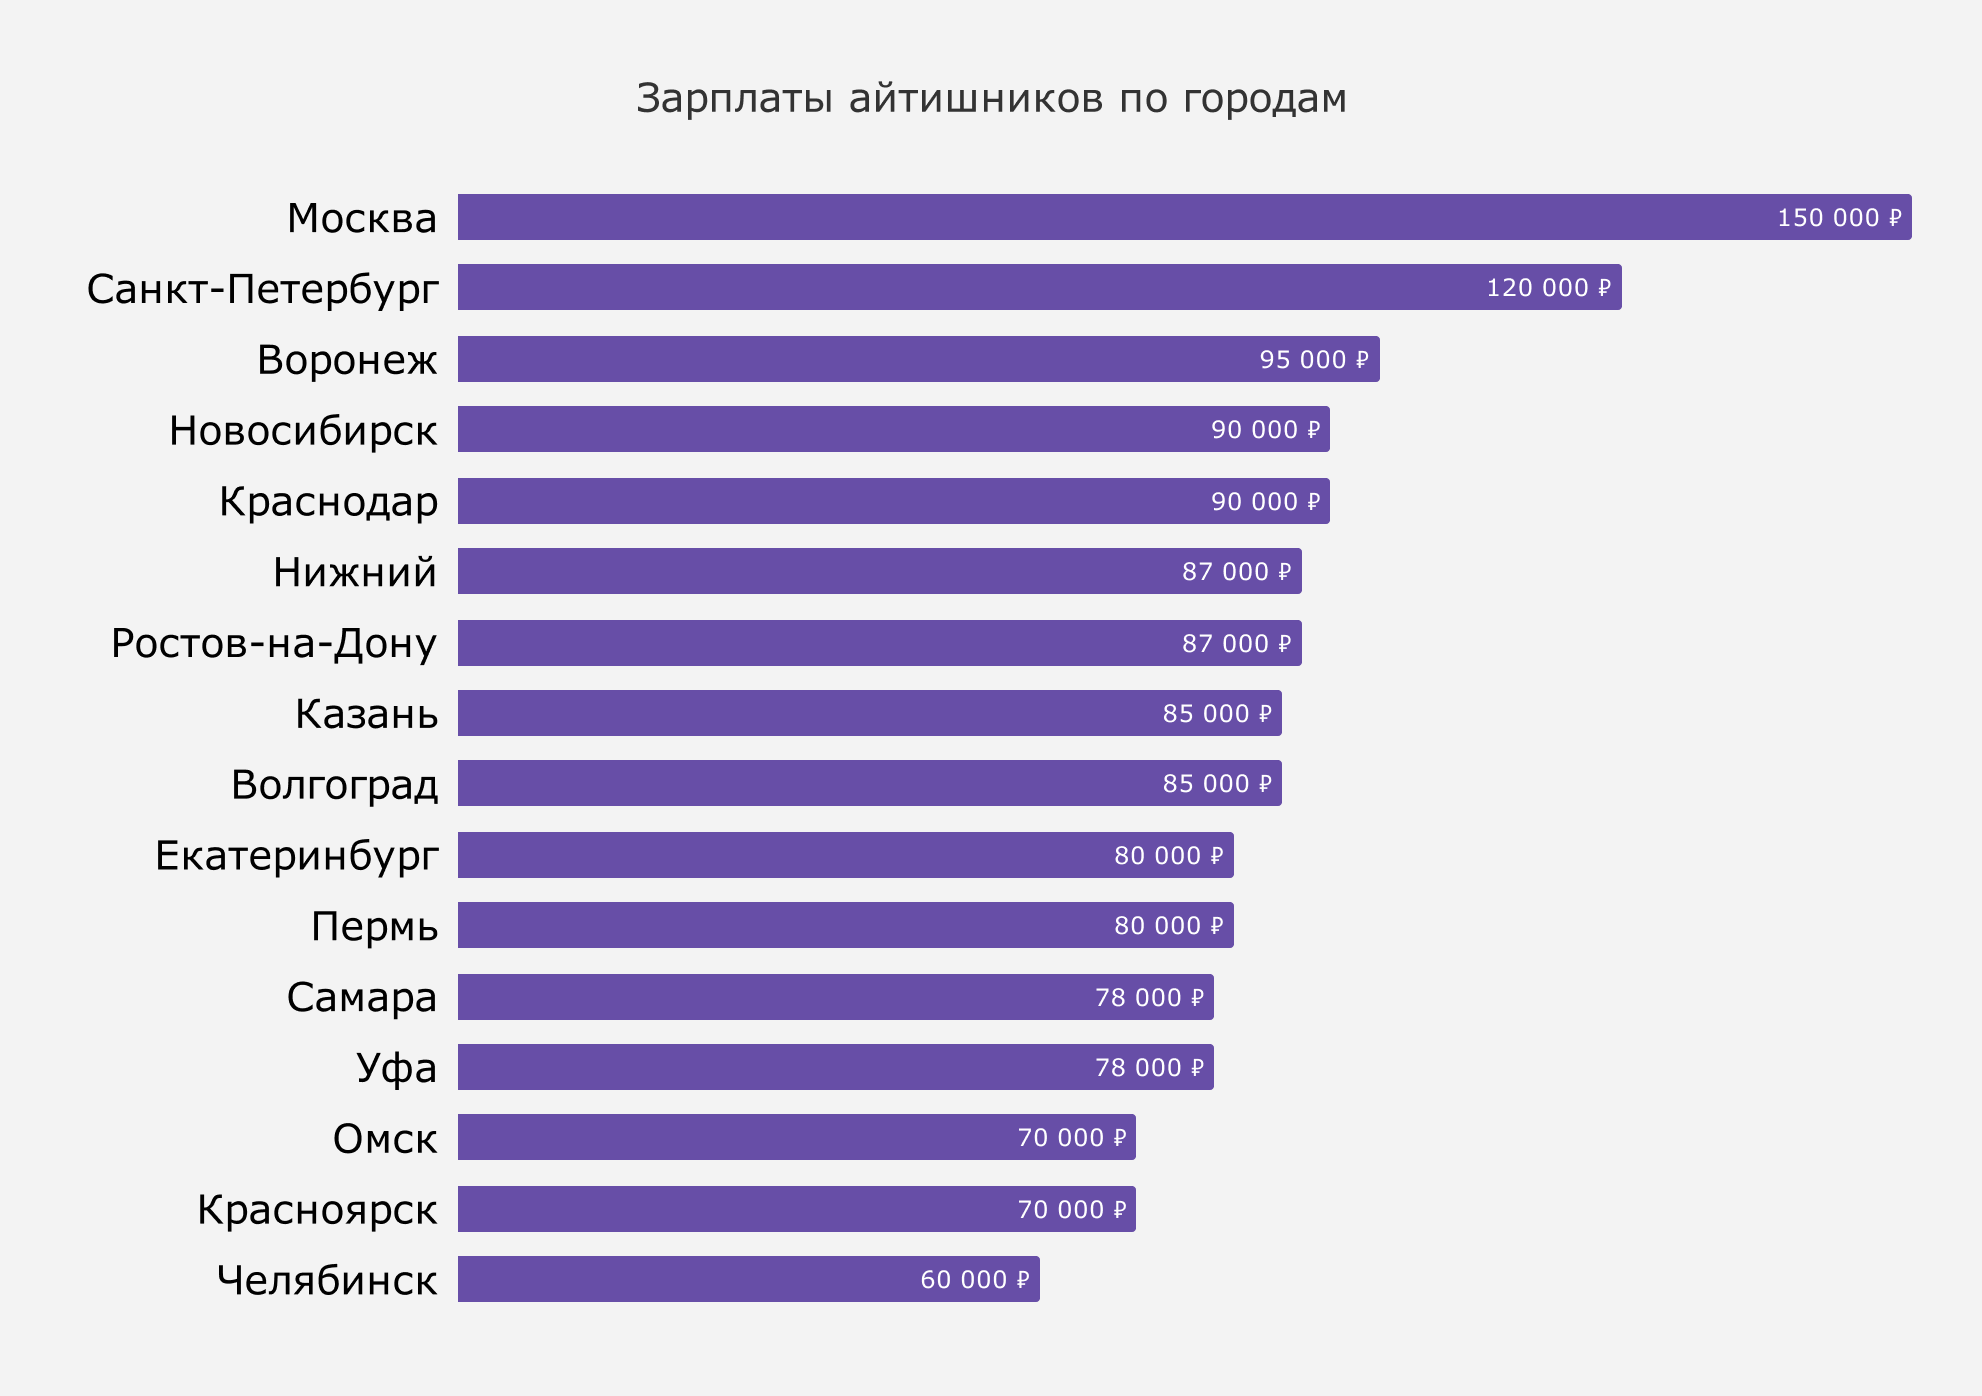 Зарплаты в санкт-петербурге в разных областях трудовой деятельности